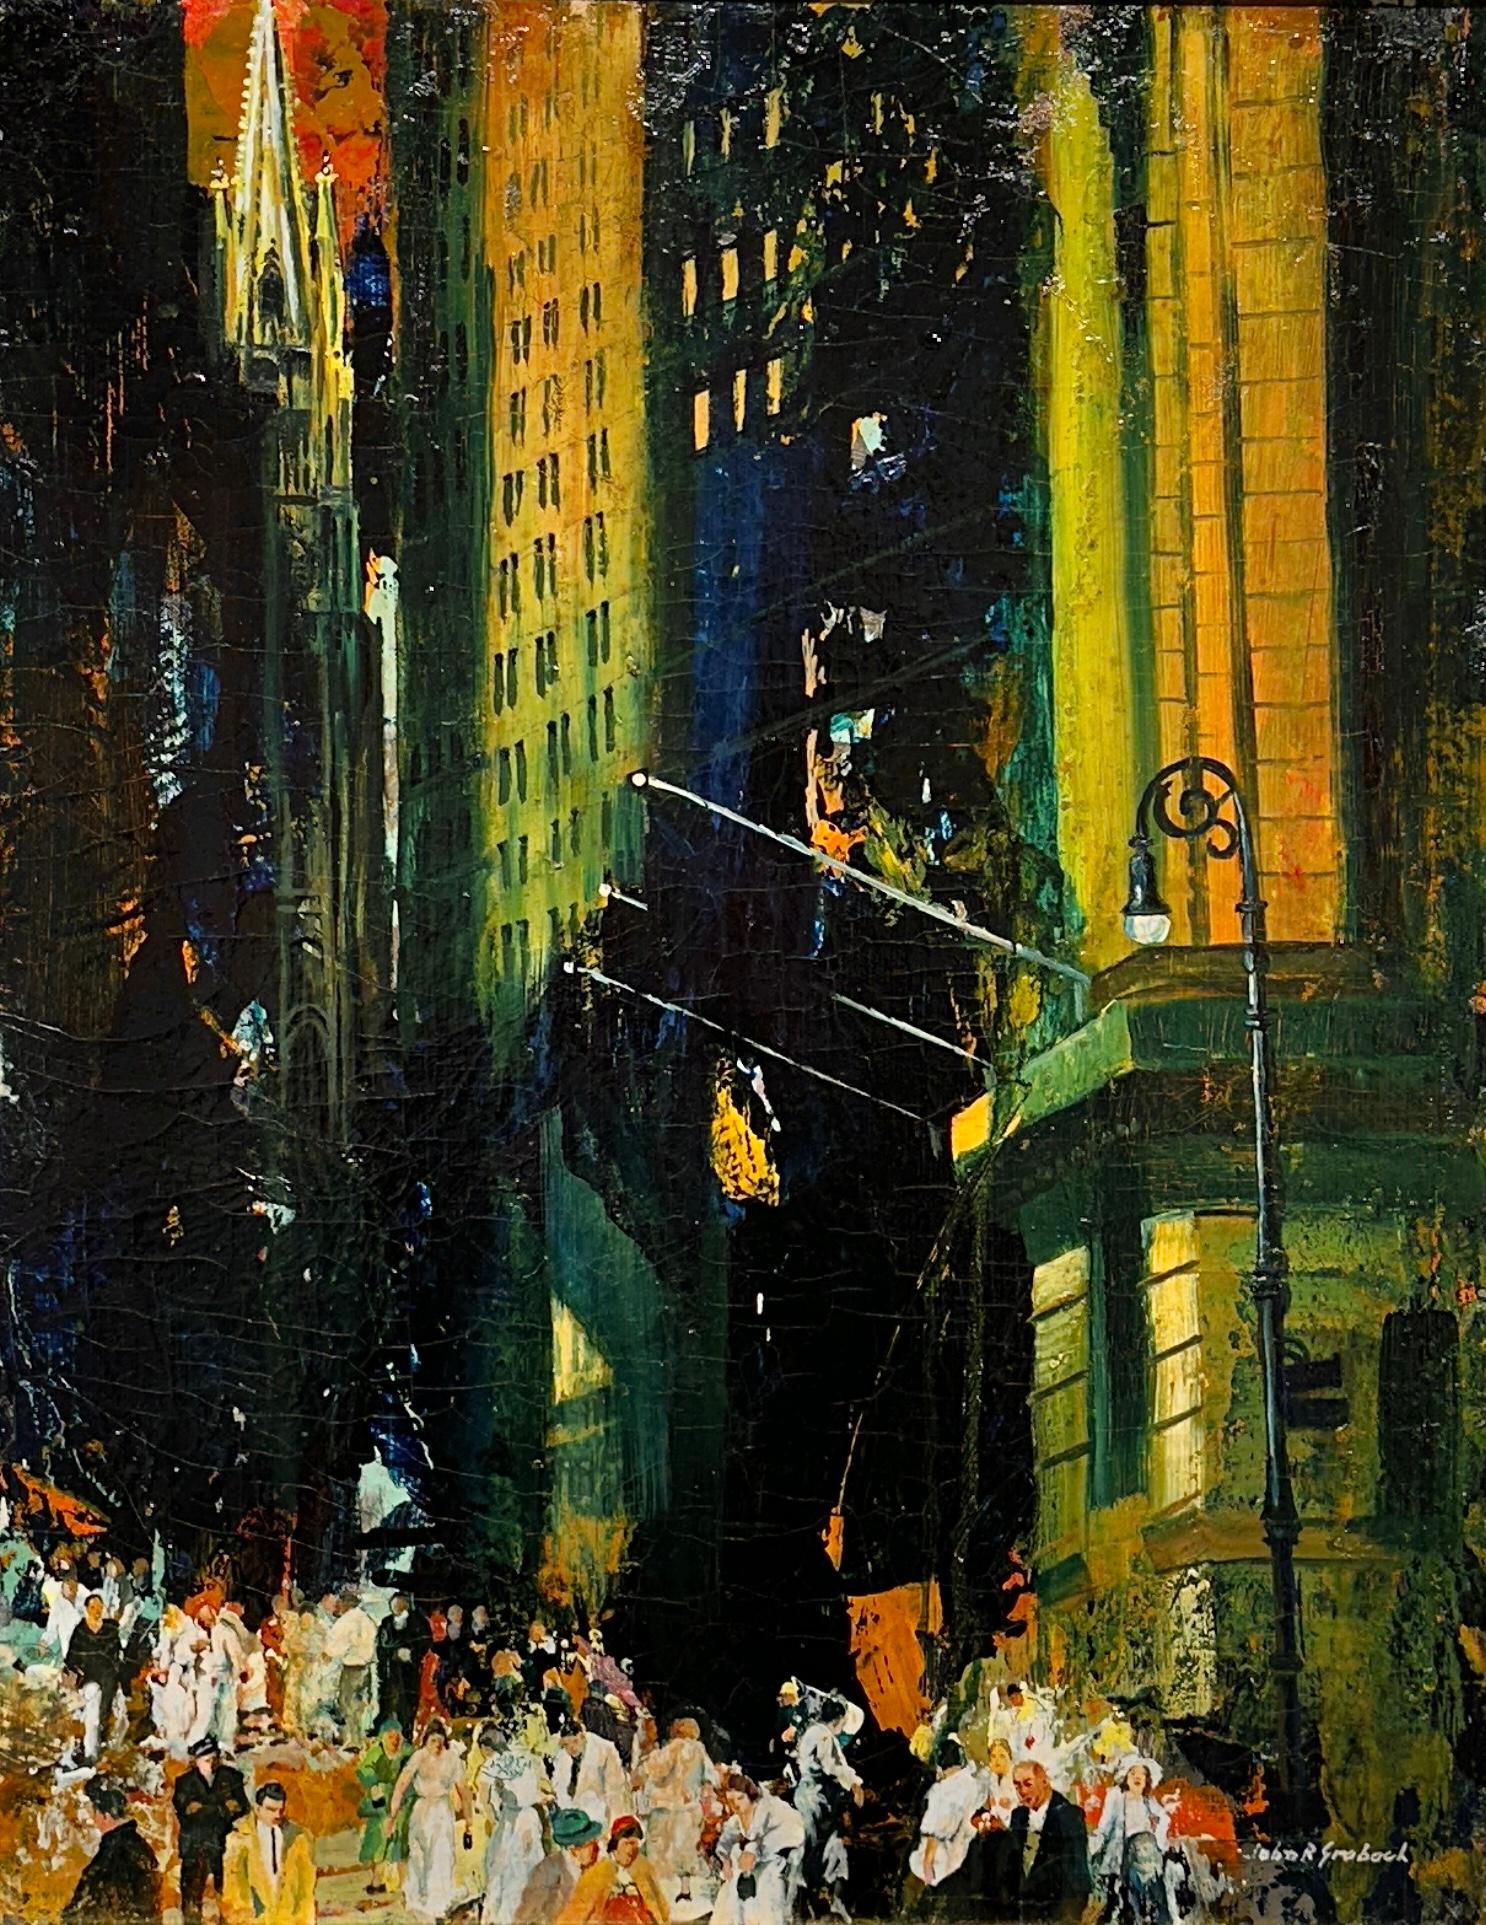 Großes Wall-Street-Werk von John R. Grabach (2. März 1886 - 17. März 1981) mit ausdrucksstarken Farben und Figuren.

Grabach war ein renommierter amerikanischer Maler, der vor allem für seine stimmungsvollen Darstellungen des städtischen